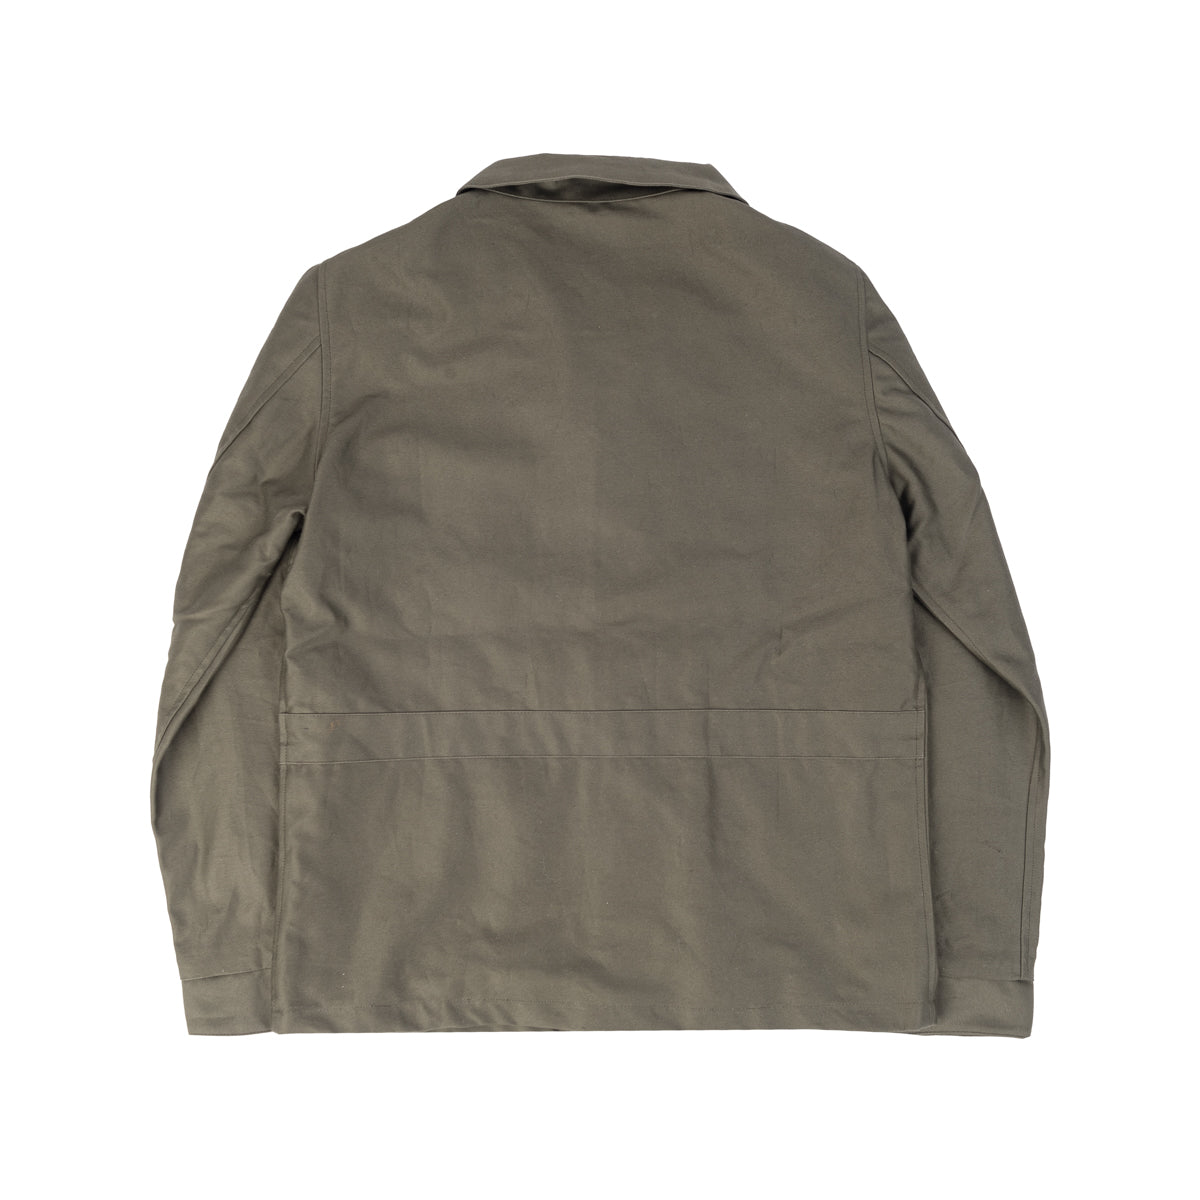 Field Jacket - Olive Drab